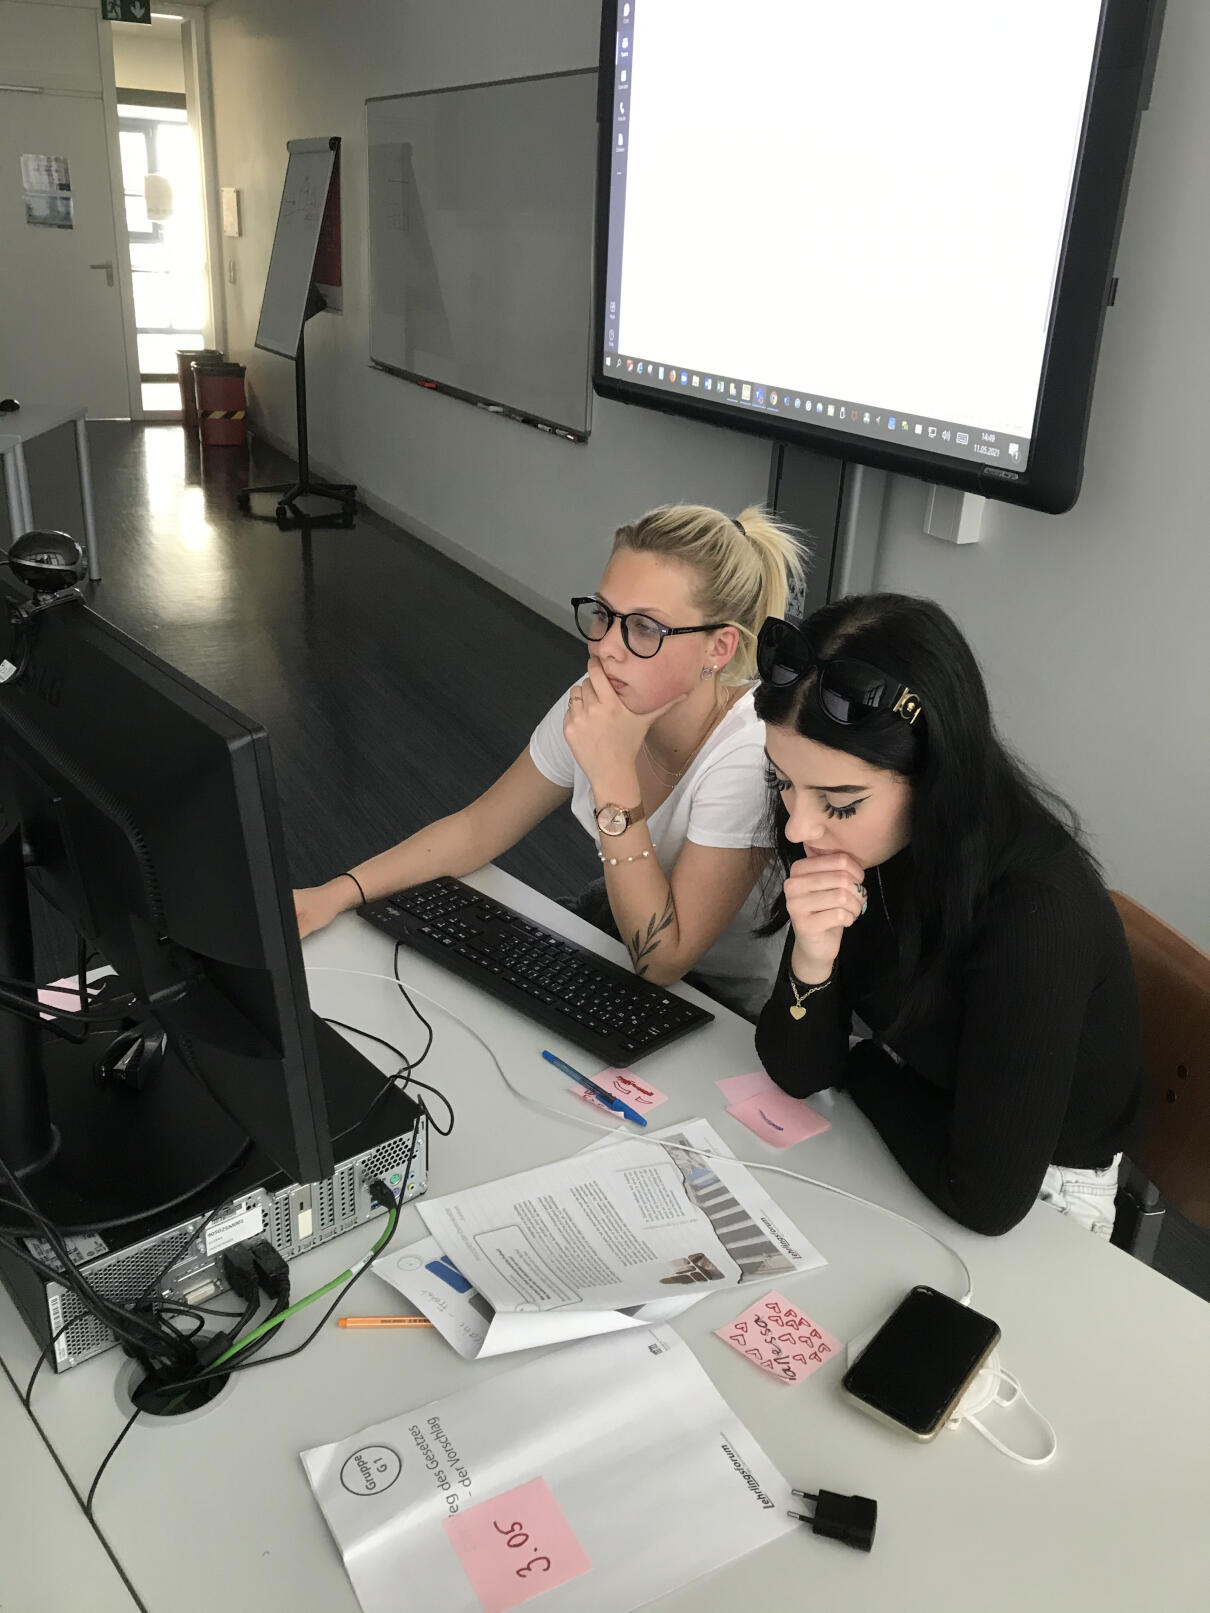 Zwei Lehrlinge sitzen an einem Tisch mit Computer, im Hintergrund ist eine Leinwand zu sehen